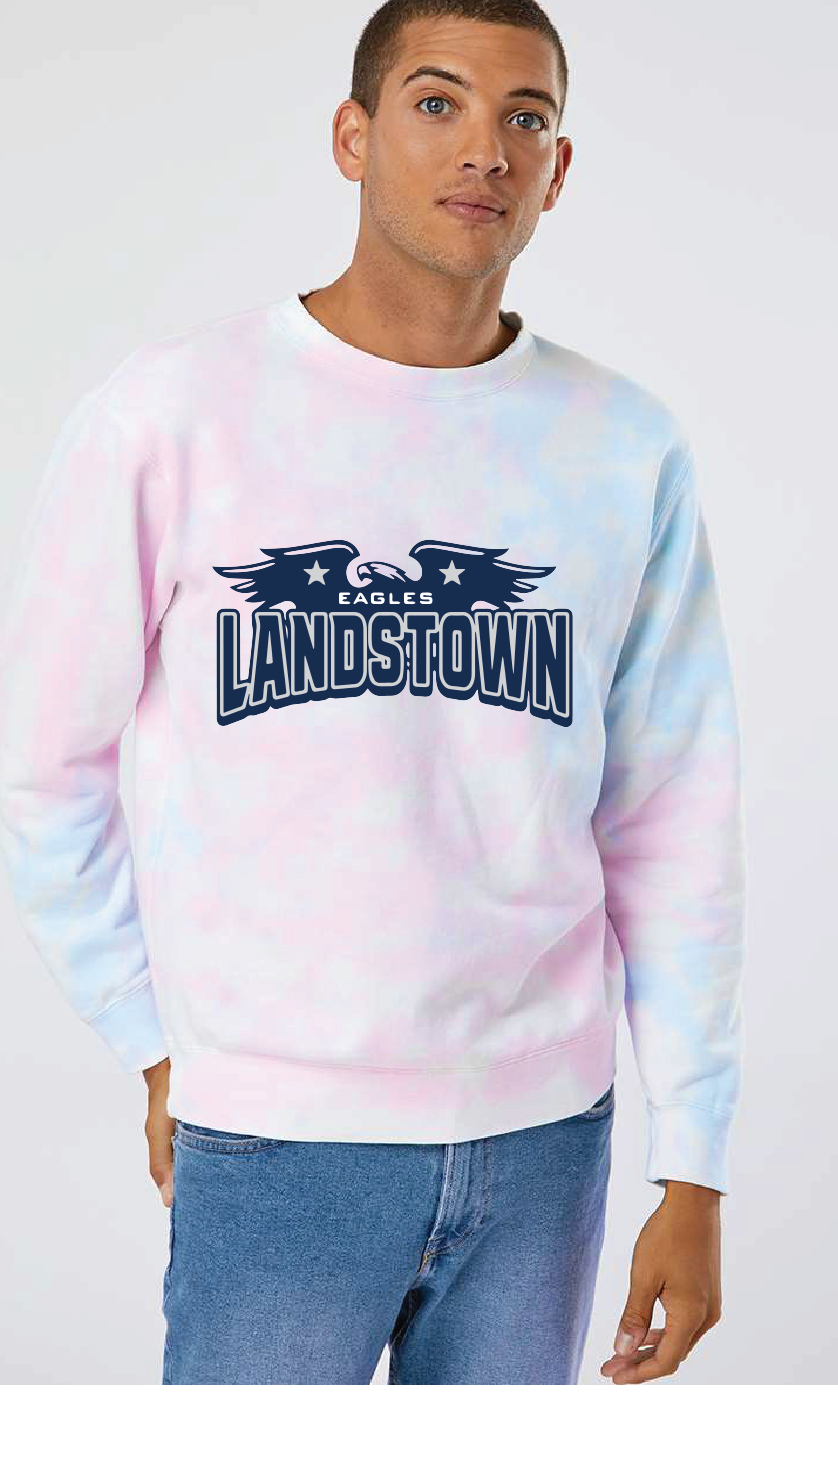 Midweight Tie-Dyed Sweatshirt / Tie Dye Cotton Candy / Landstown High School